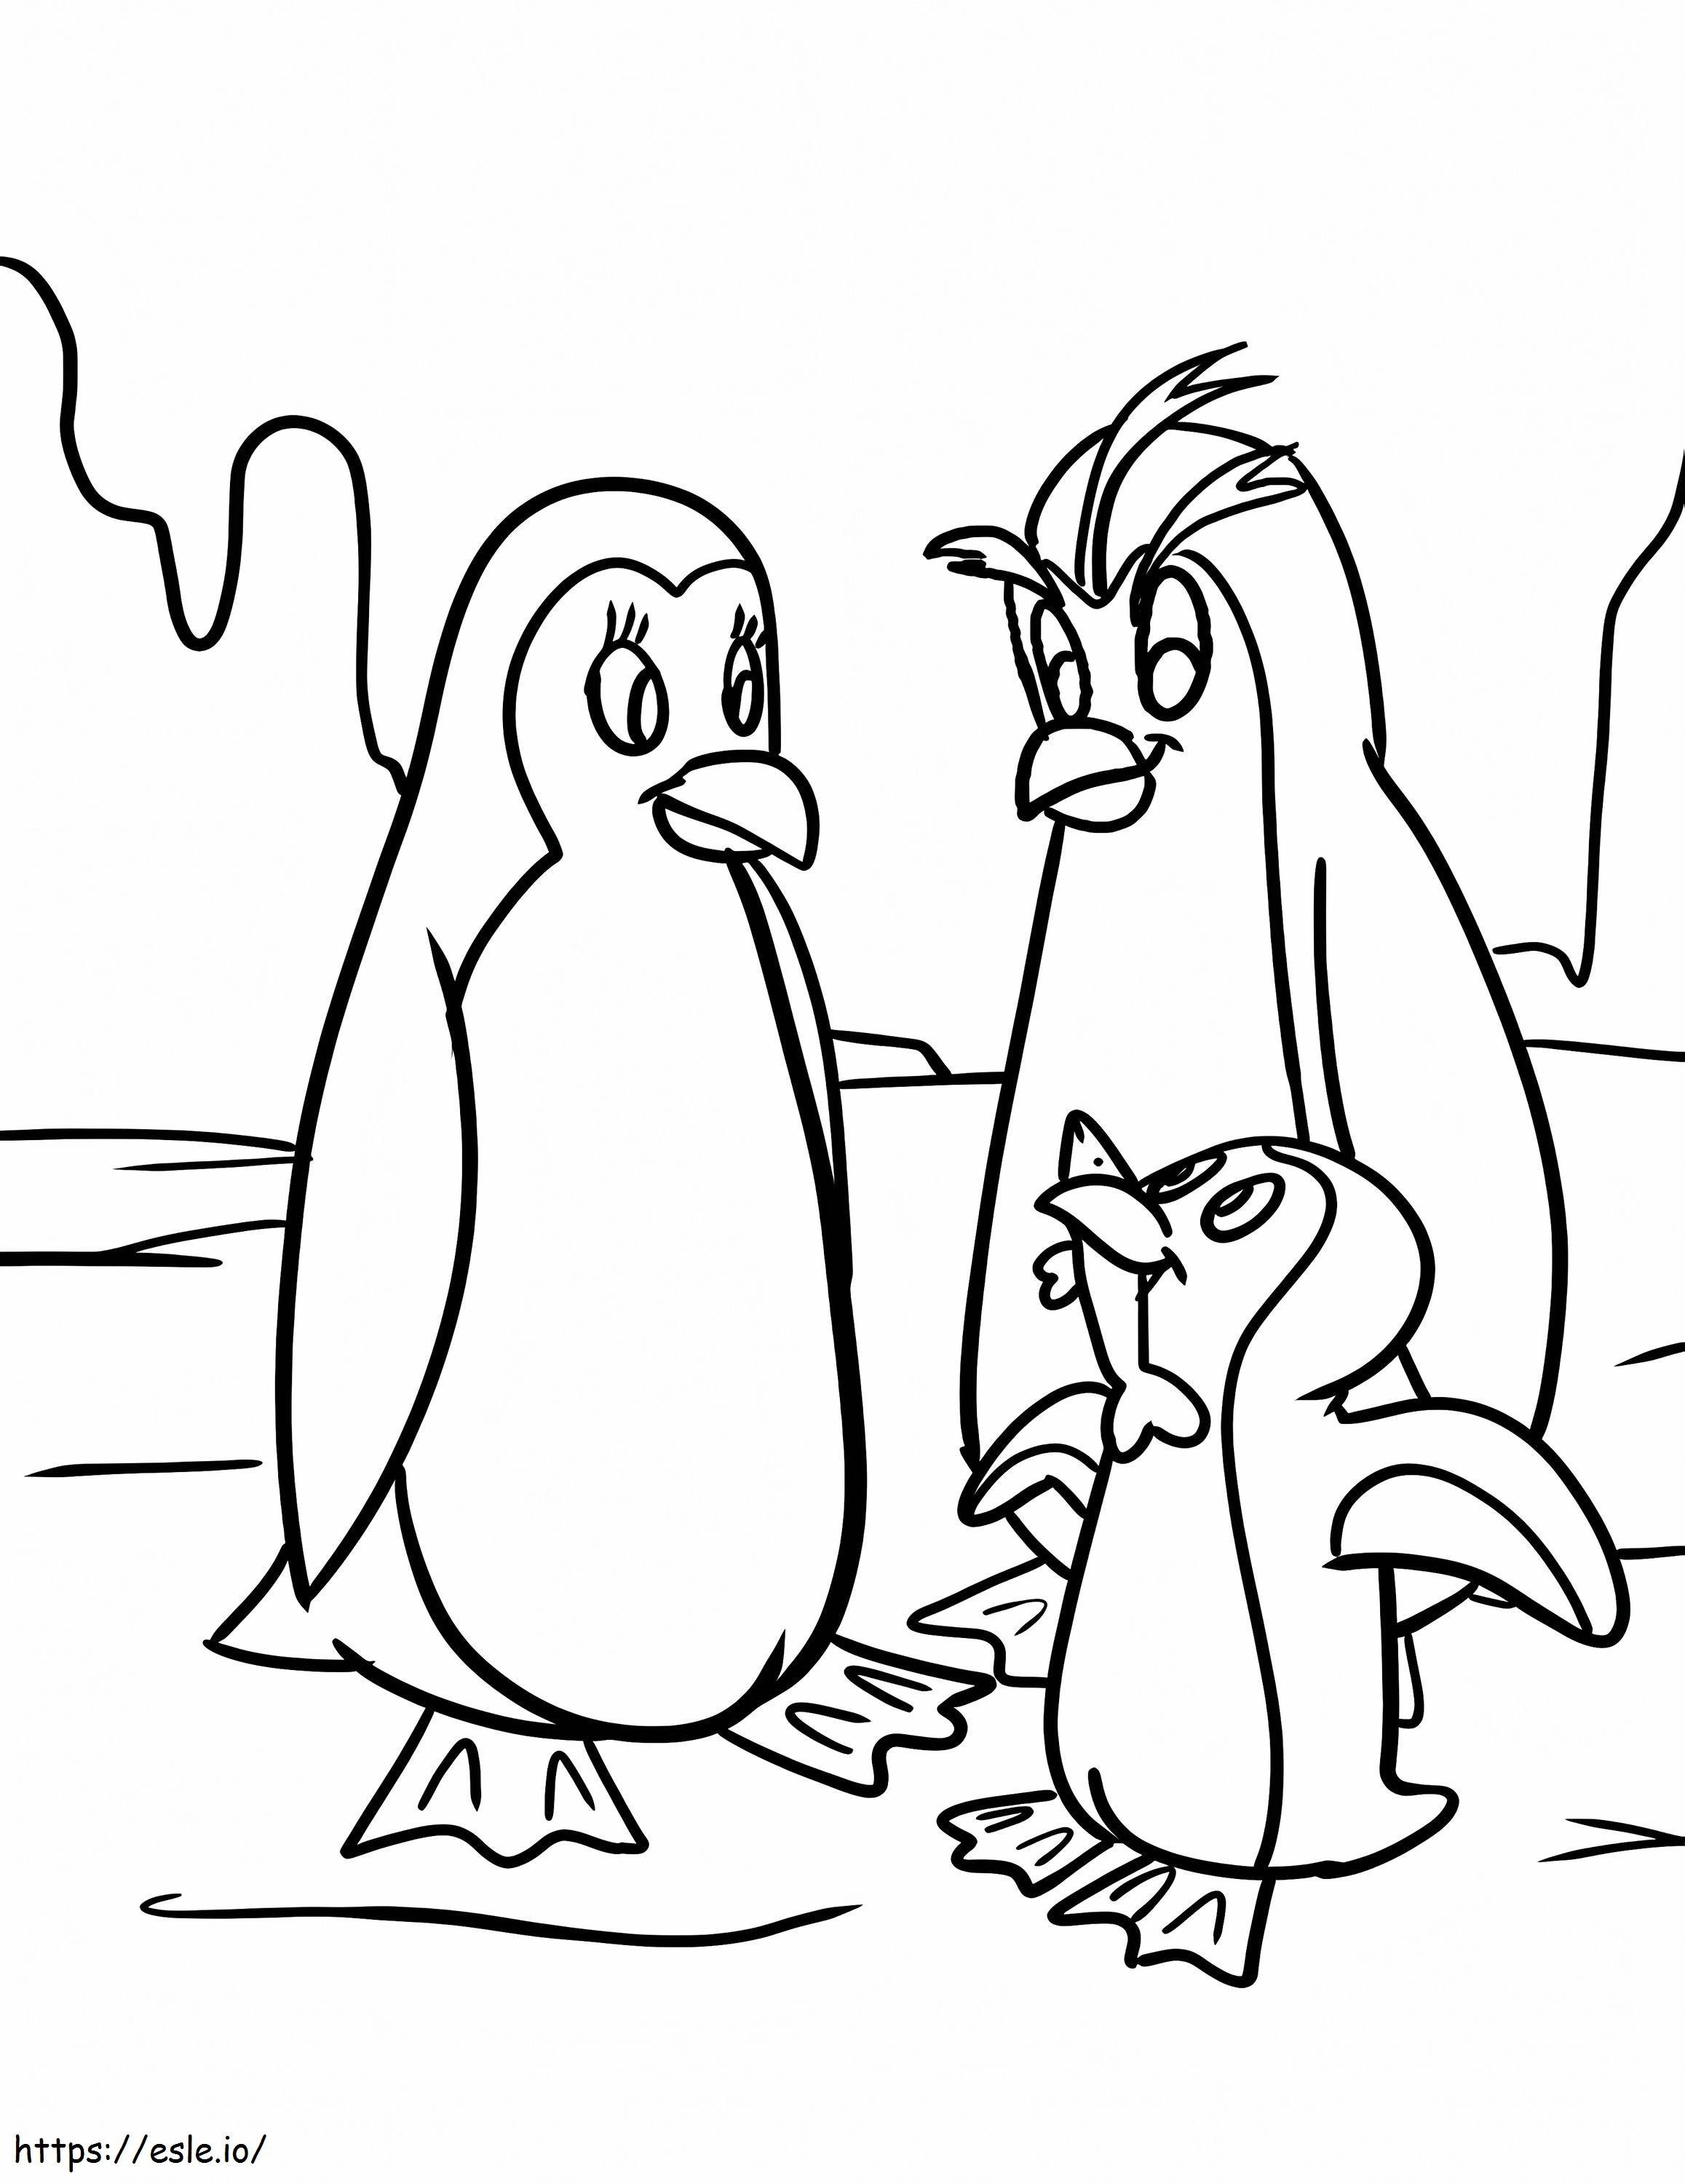 1548317858 Pinguim Lindo Um Pinguim Feliz Aproveite o Natal Um Pinguim Feliz De Pinguim para colorir